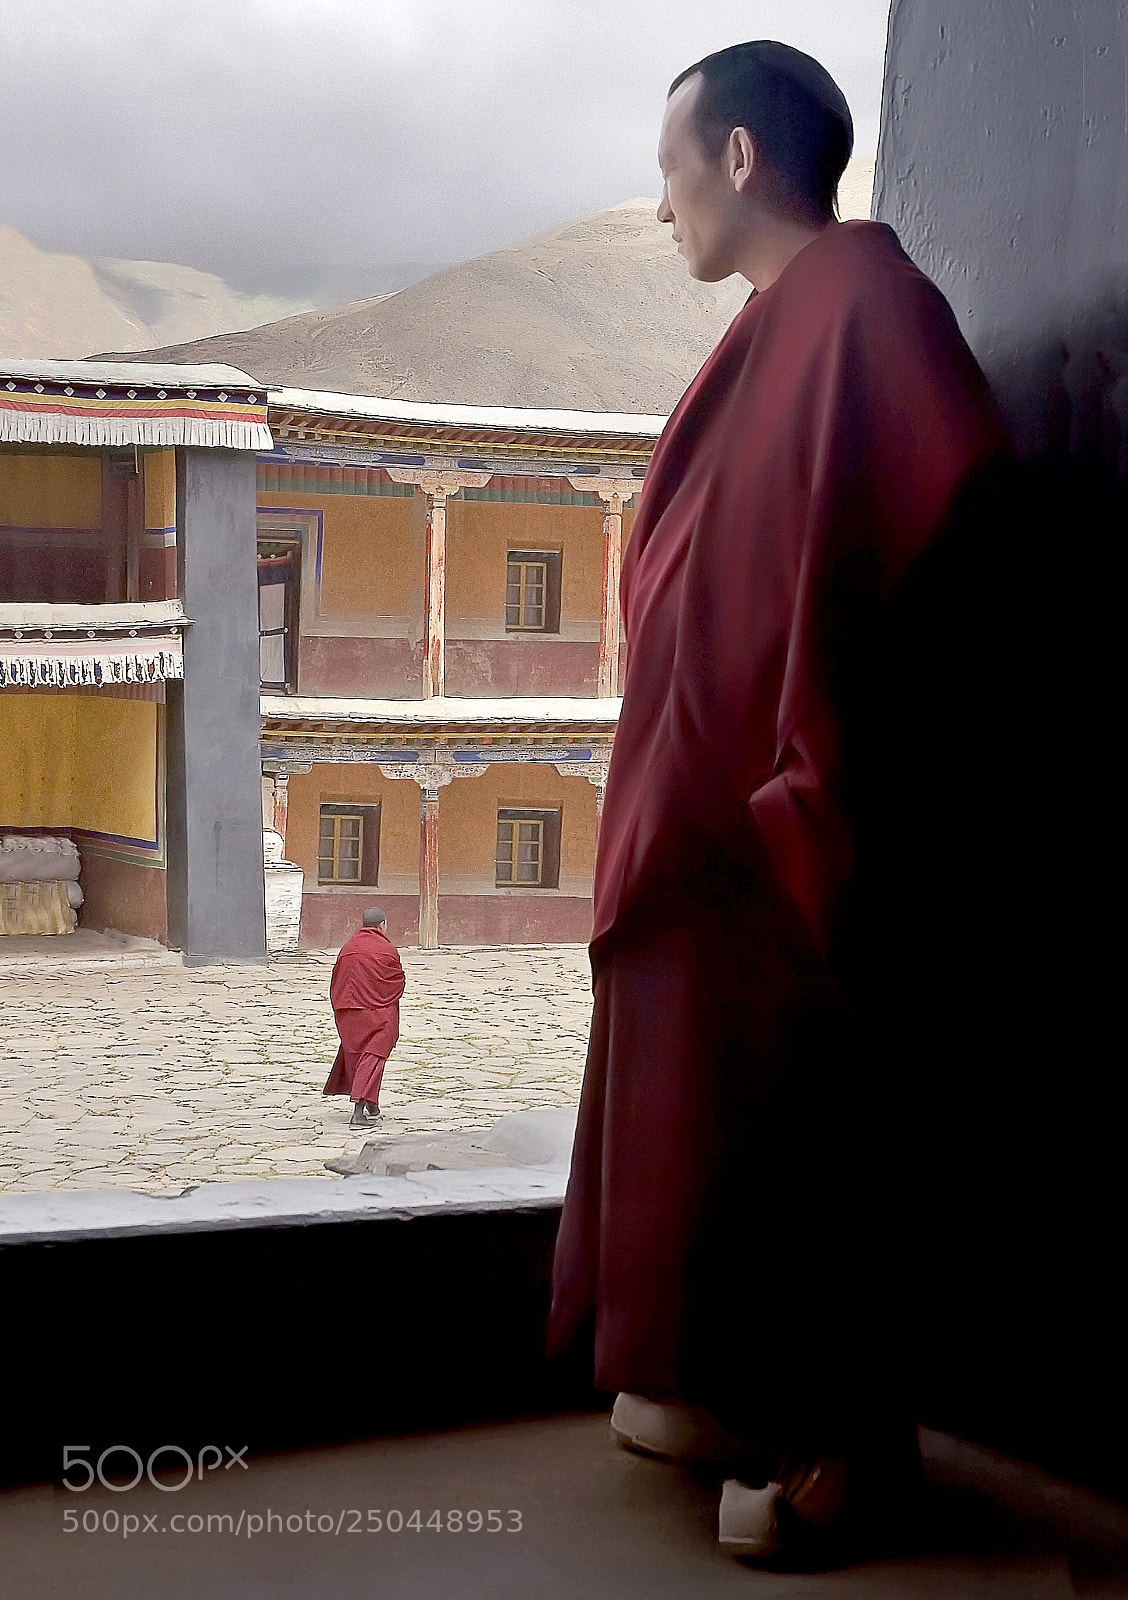 Nikon D70 sample photo. Moine tibétain photography